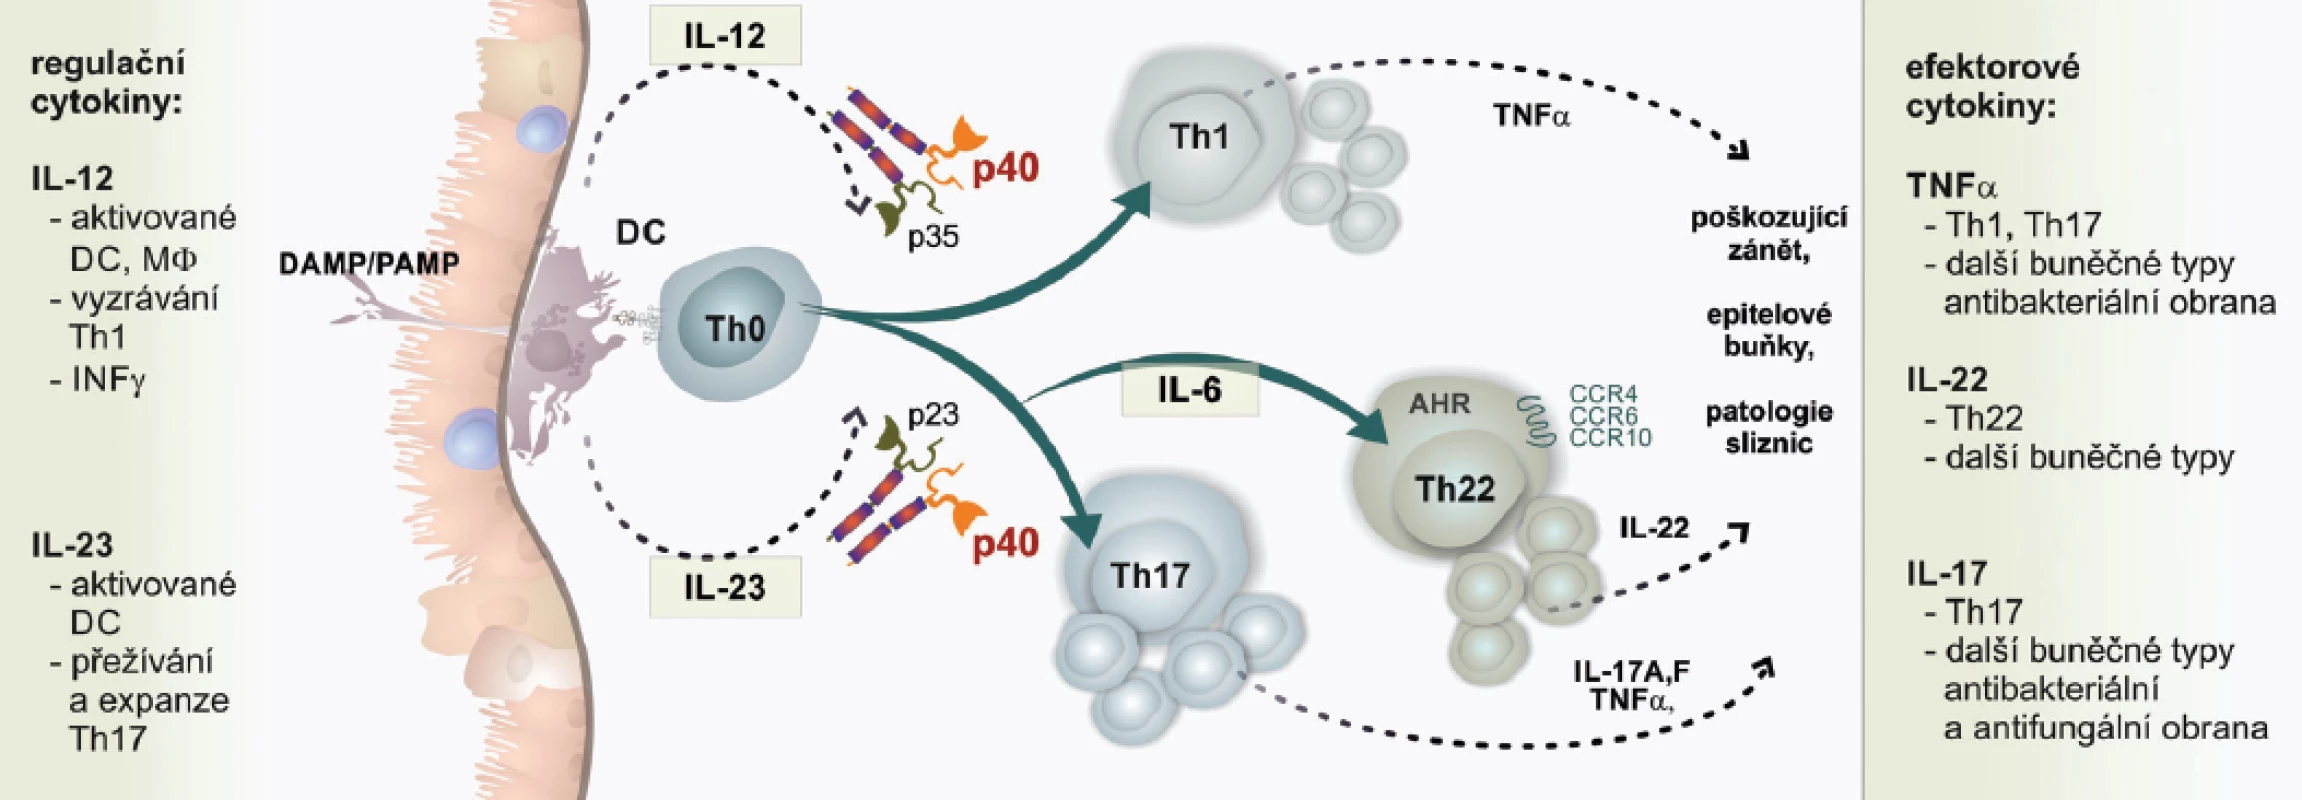 Cytokinová regulační osa IL-12/IL-23/IL-22 v imunopatogenezi psoriázy